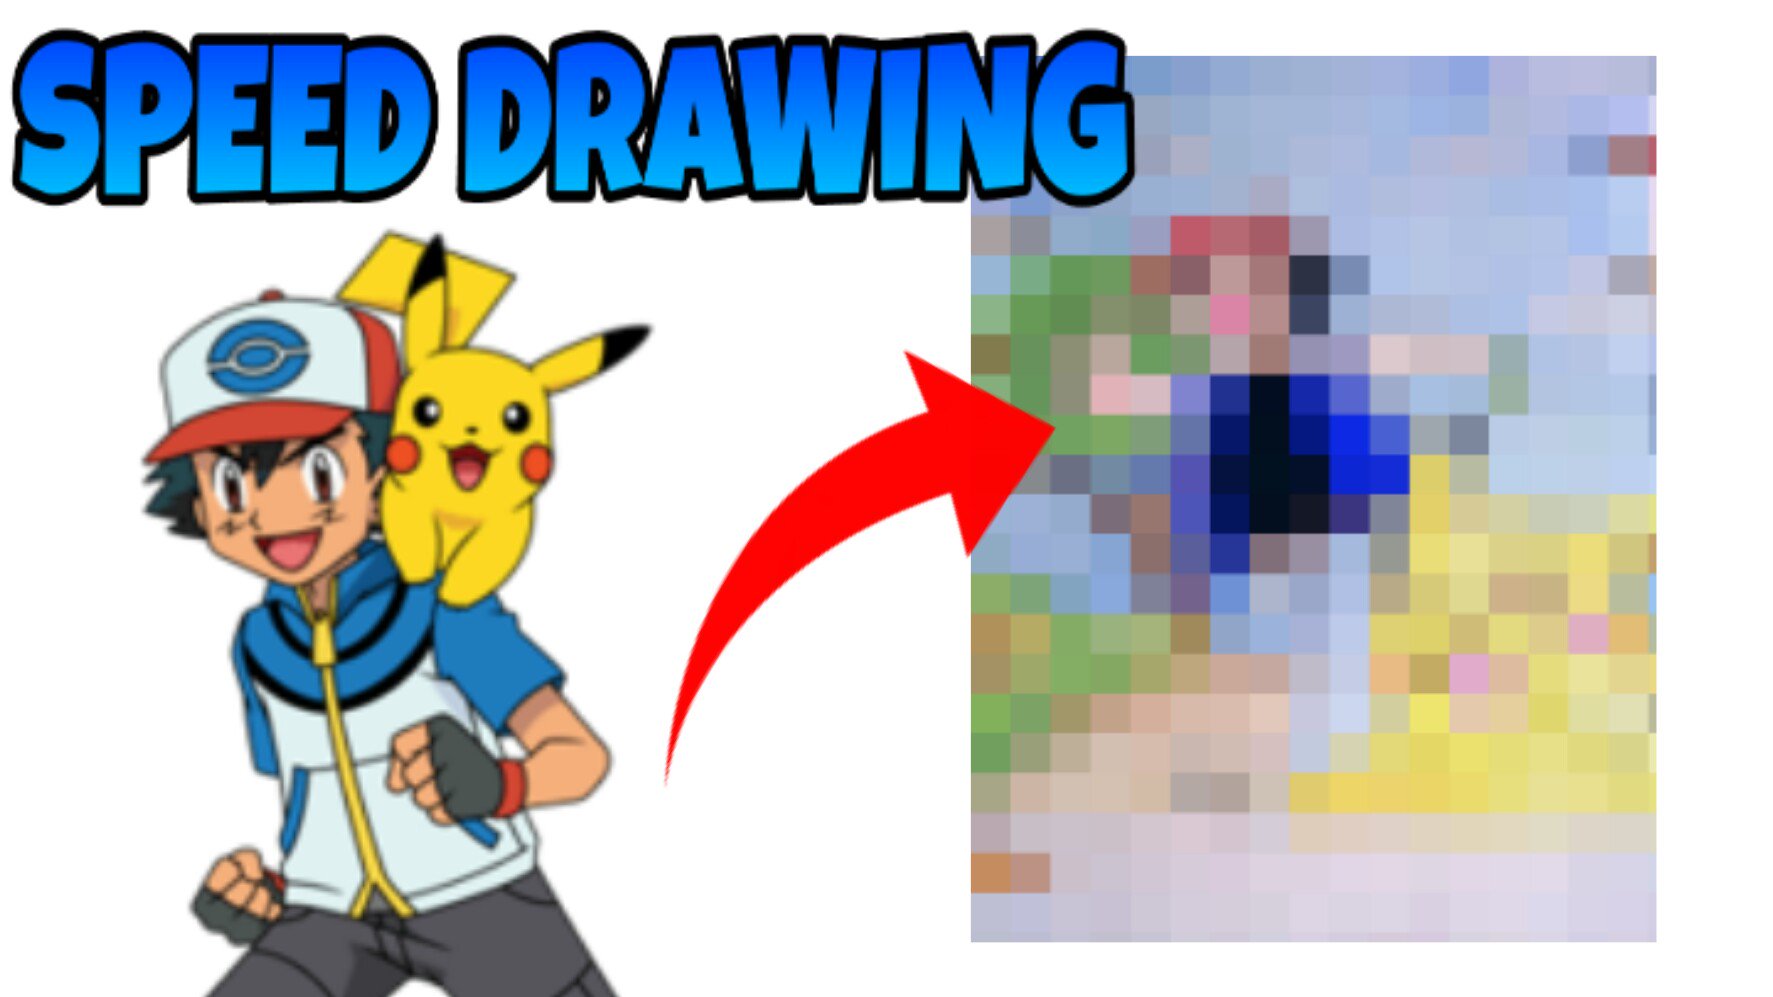 como desenhar ash e pikachu - Pokemon 